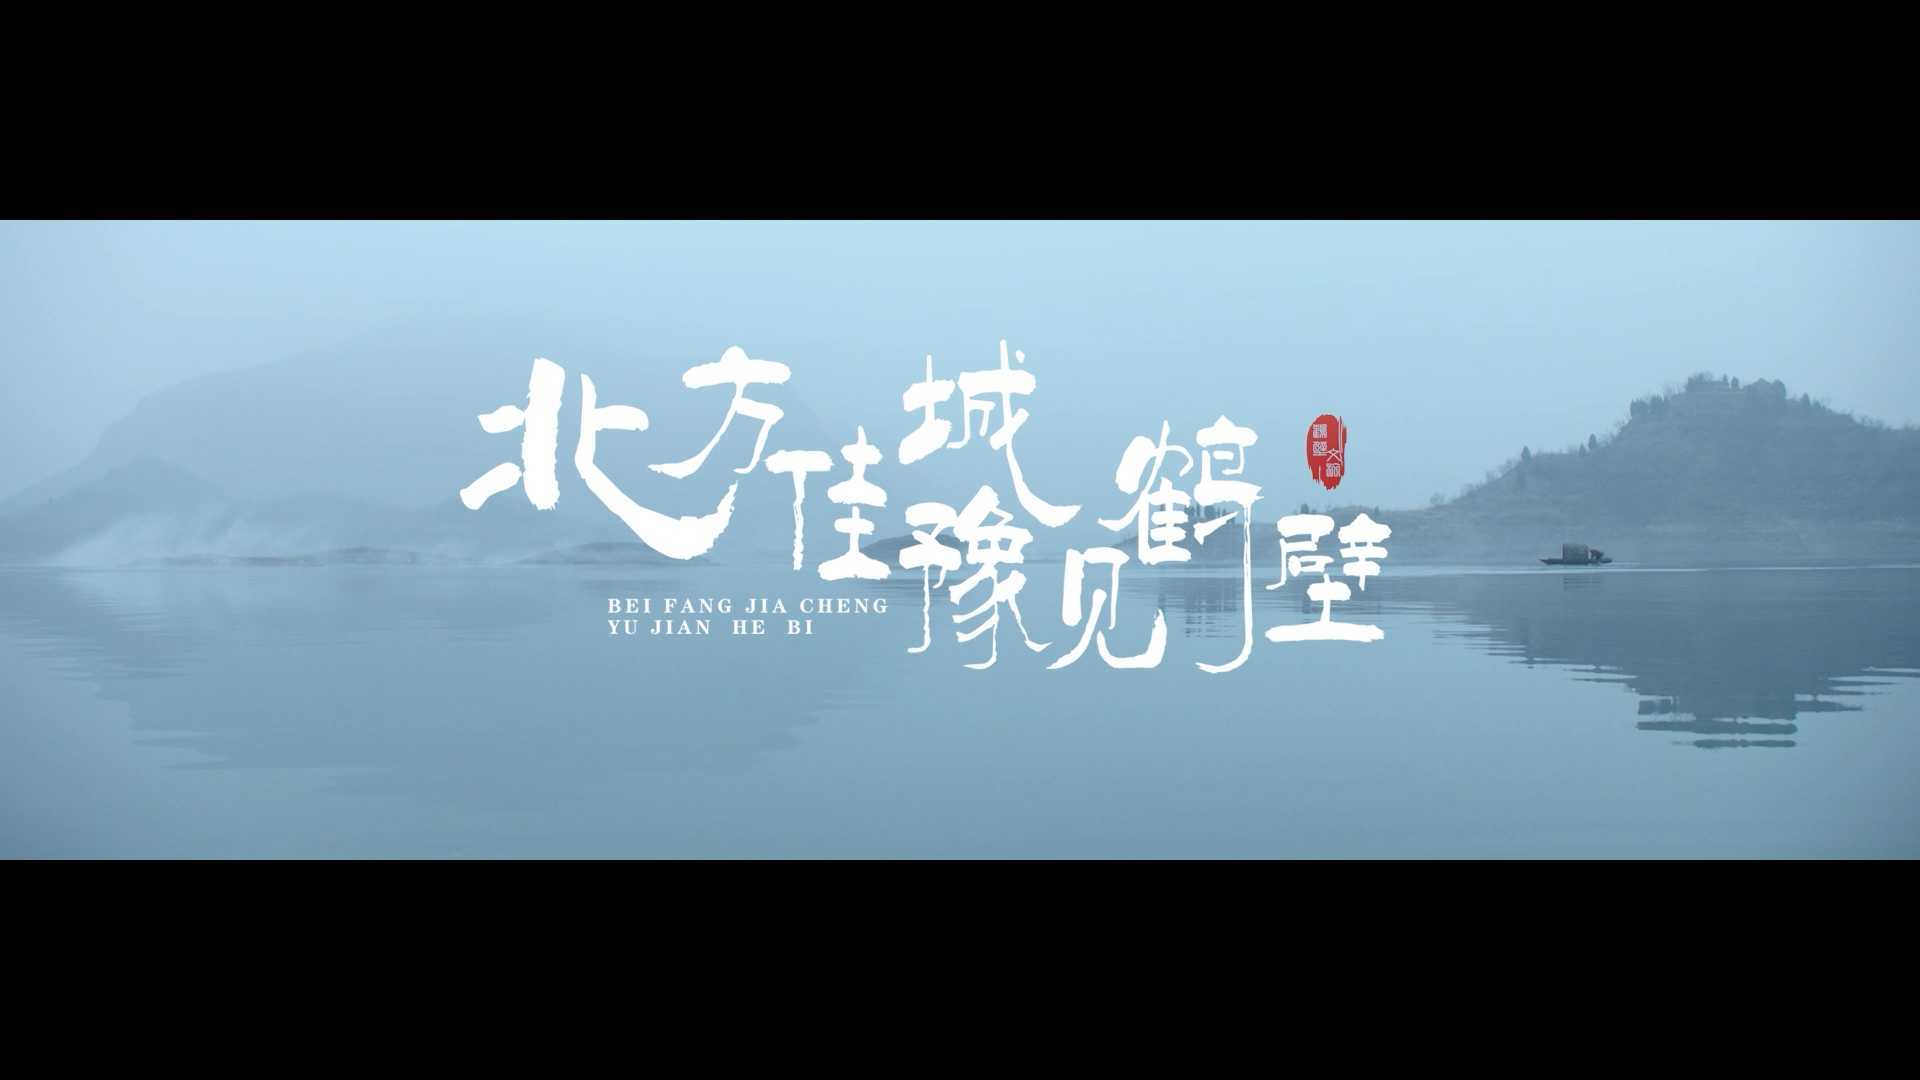 【菠萝视频】鹤壁市文旅宣传片《北方佳城遇见鹤壁》